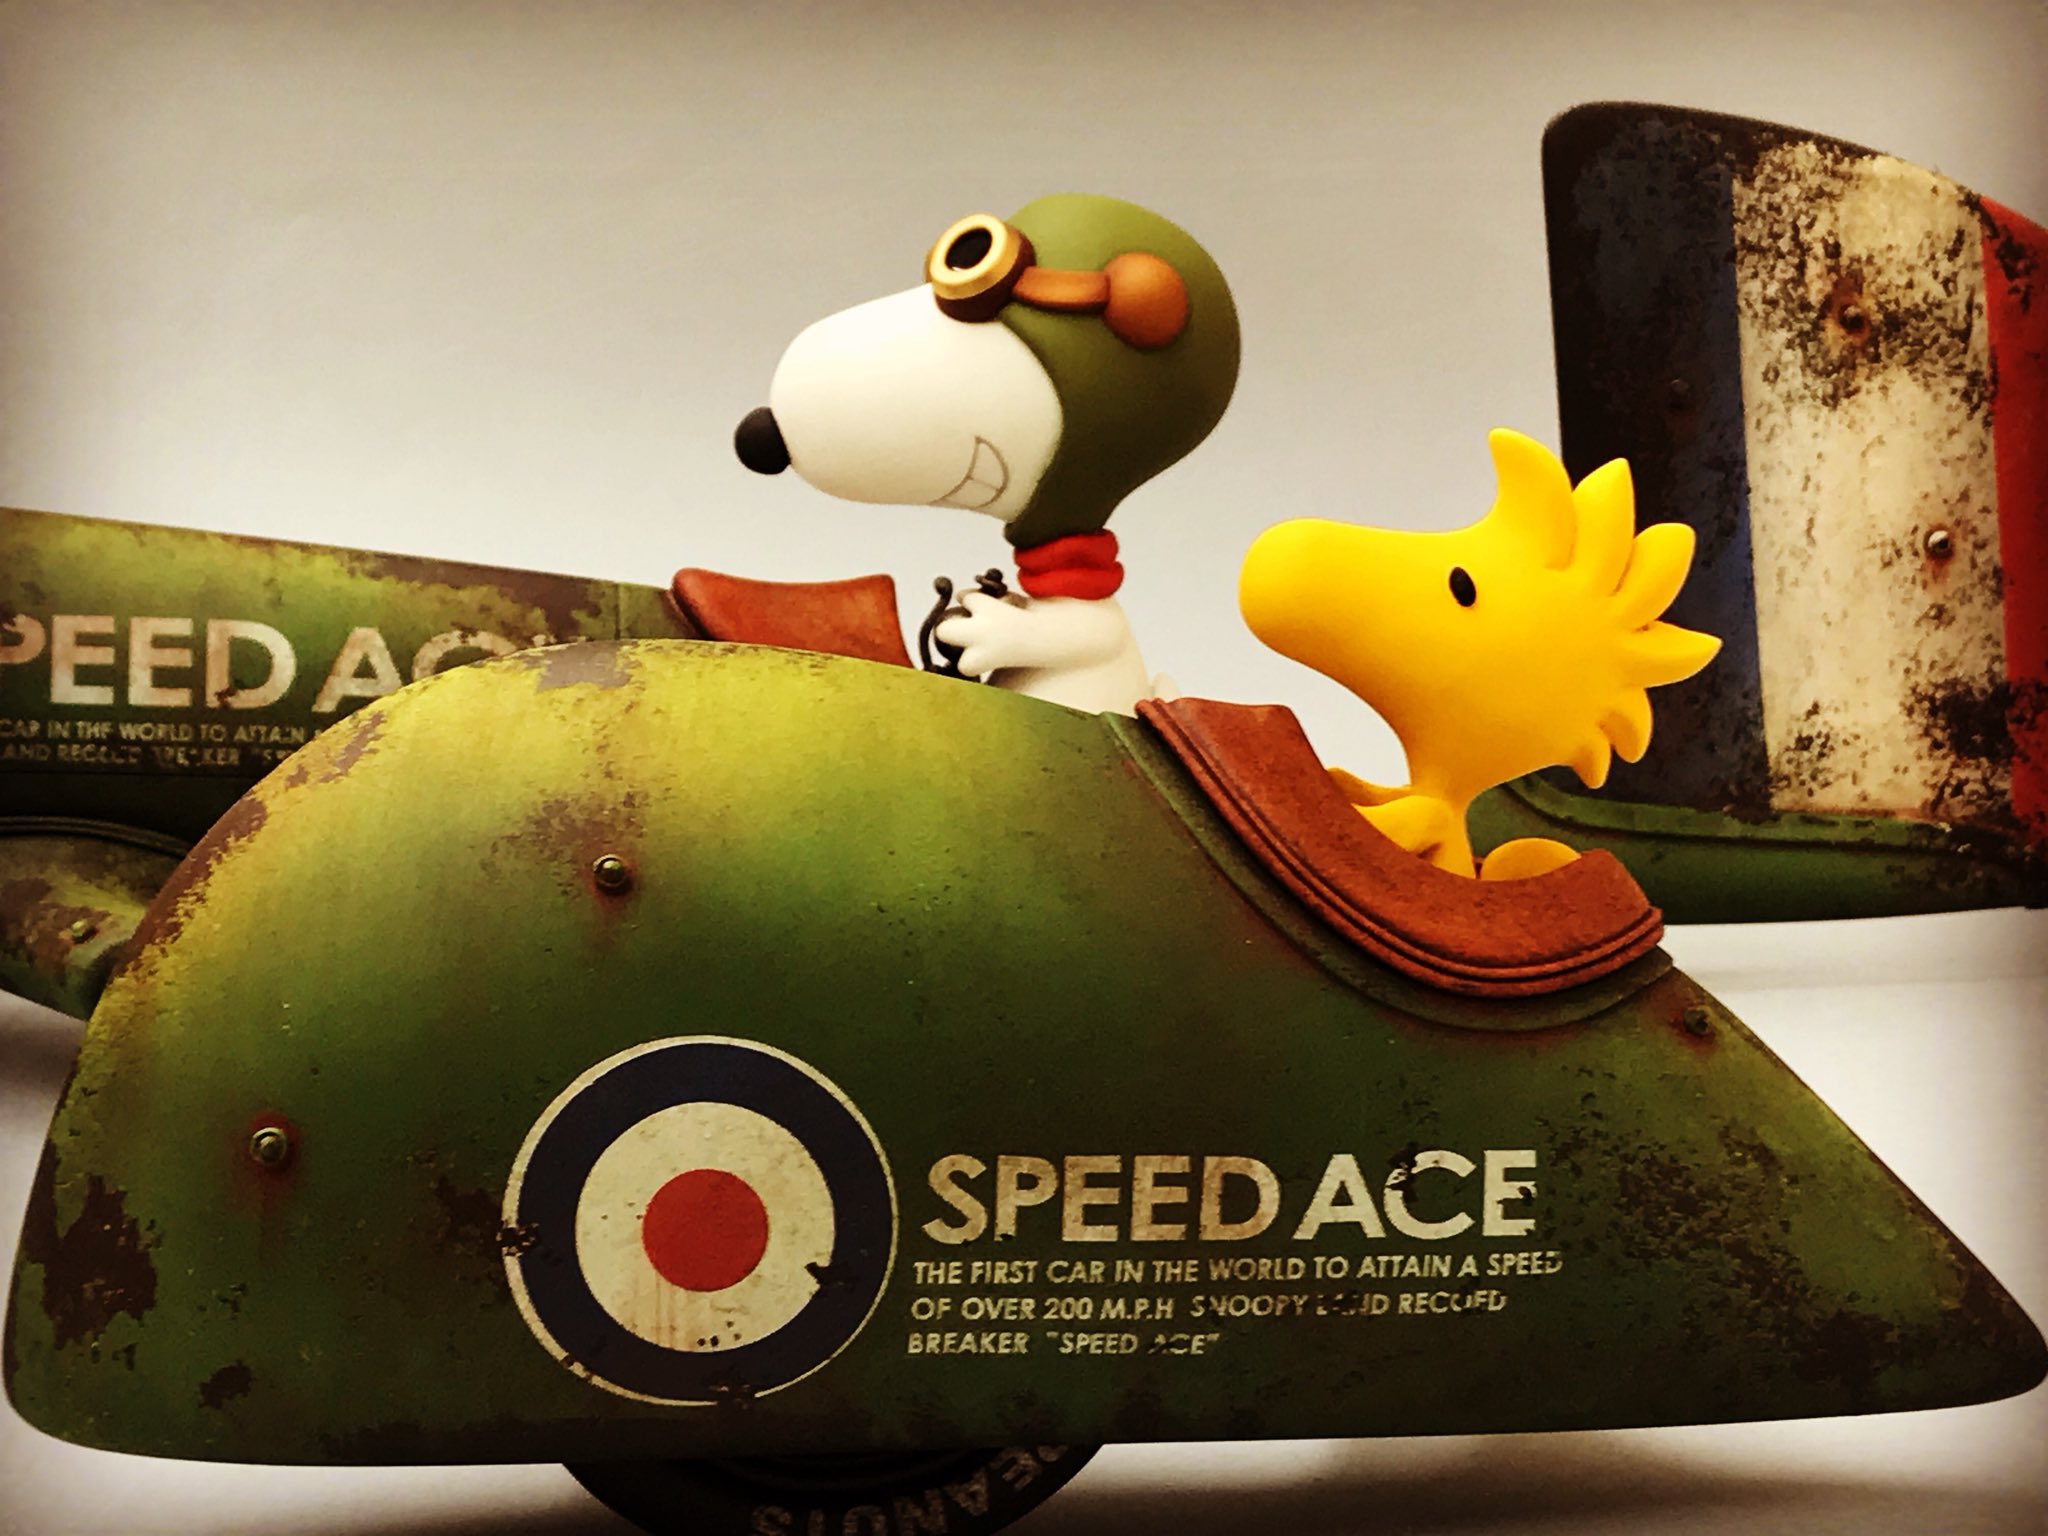 松岡ミチヒロ 𝕄𝕚𝕔𝕙𝕚𝕙𝕚𝕣𝕠 𝕄𝕒𝕥𝕤𝕦𝕠𝕜𝕒 今回の作品 スピード エース はスピードを競い合うレコードブレーカーを制作 スヌーピーとウッドストックをペアでサイドカーとしました スヌーピー おもしろサイエンスアート展 Snoopy Fantaration